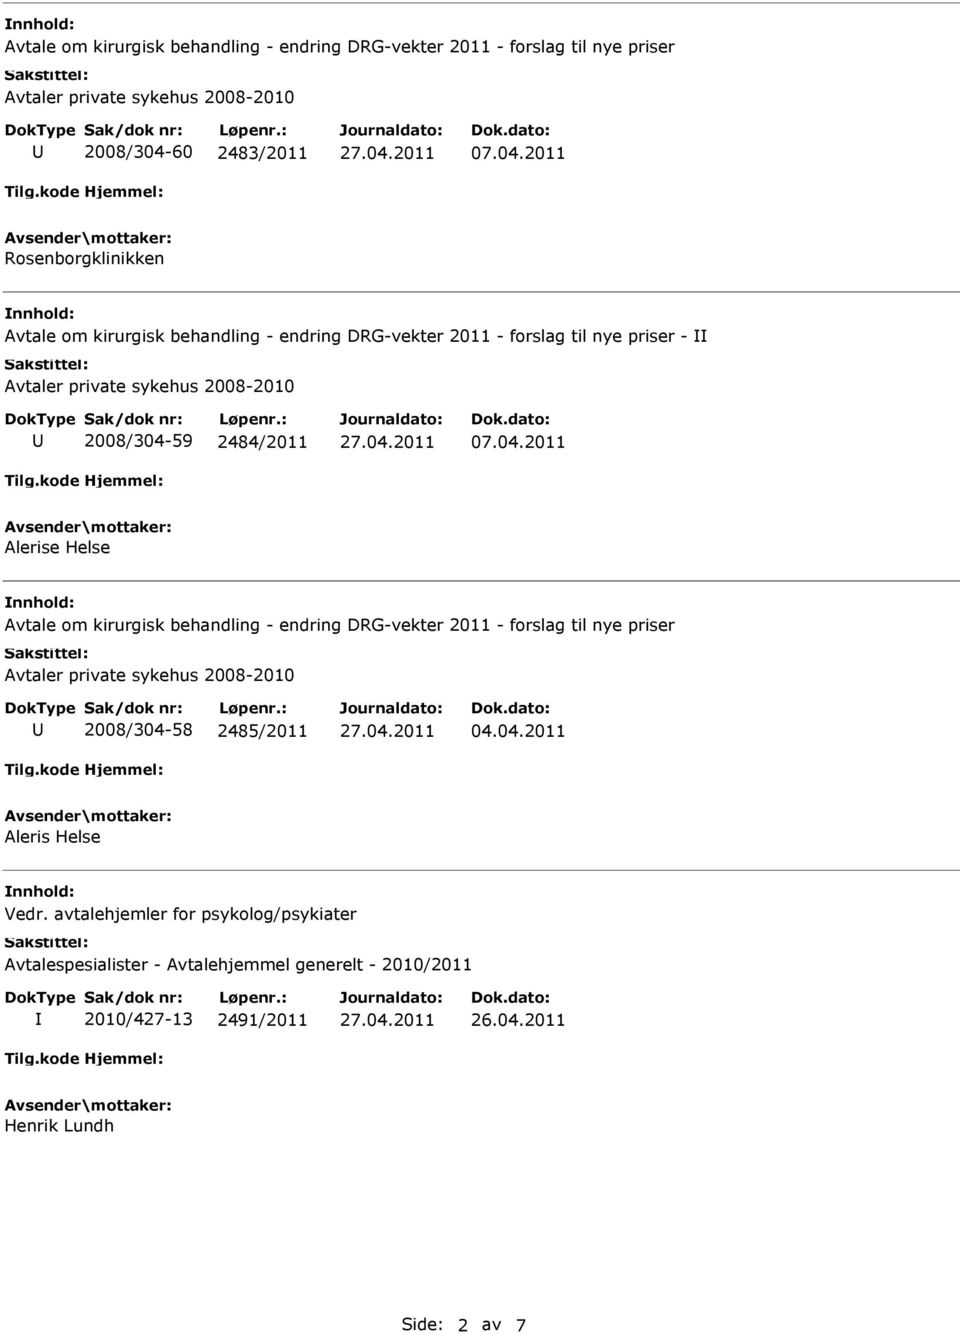 2011 Rosenborgklinikken Avtale om kirurgisk behandling - endring DRG-vekter 2011 - forslag til nye priser - Avtaler private sykehus 2008-2010 2008/304-59